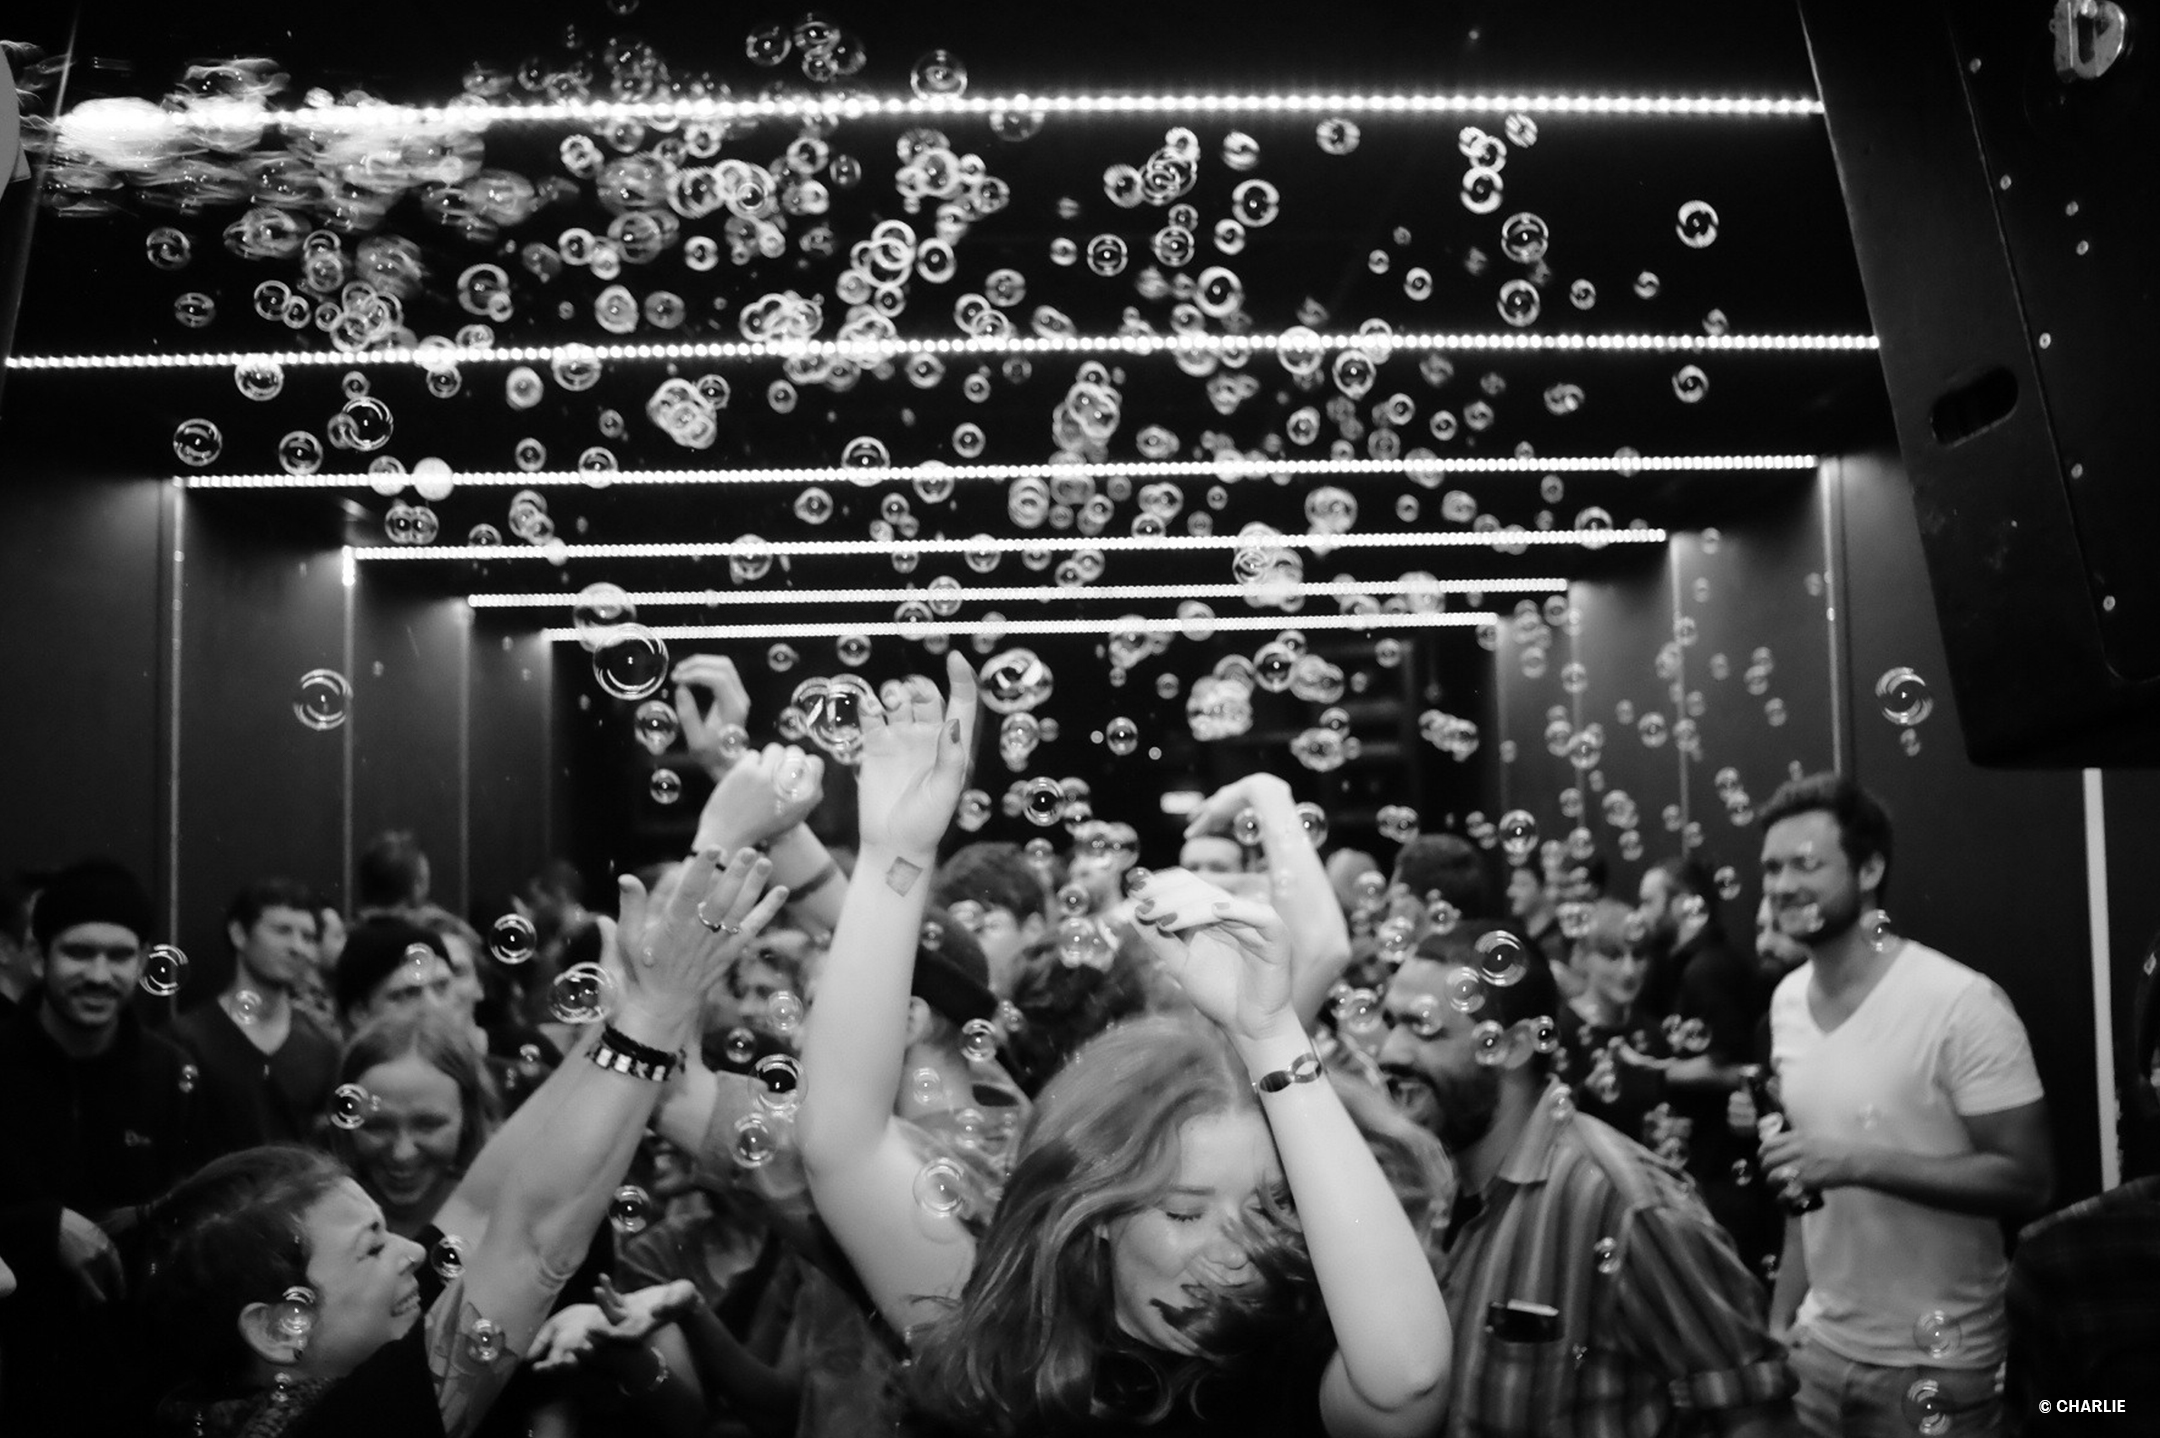 Viele Menschen feiern und tanzen ausgelassen in einem kleinen Club währen Seifenblasen auf sie herunterregnen